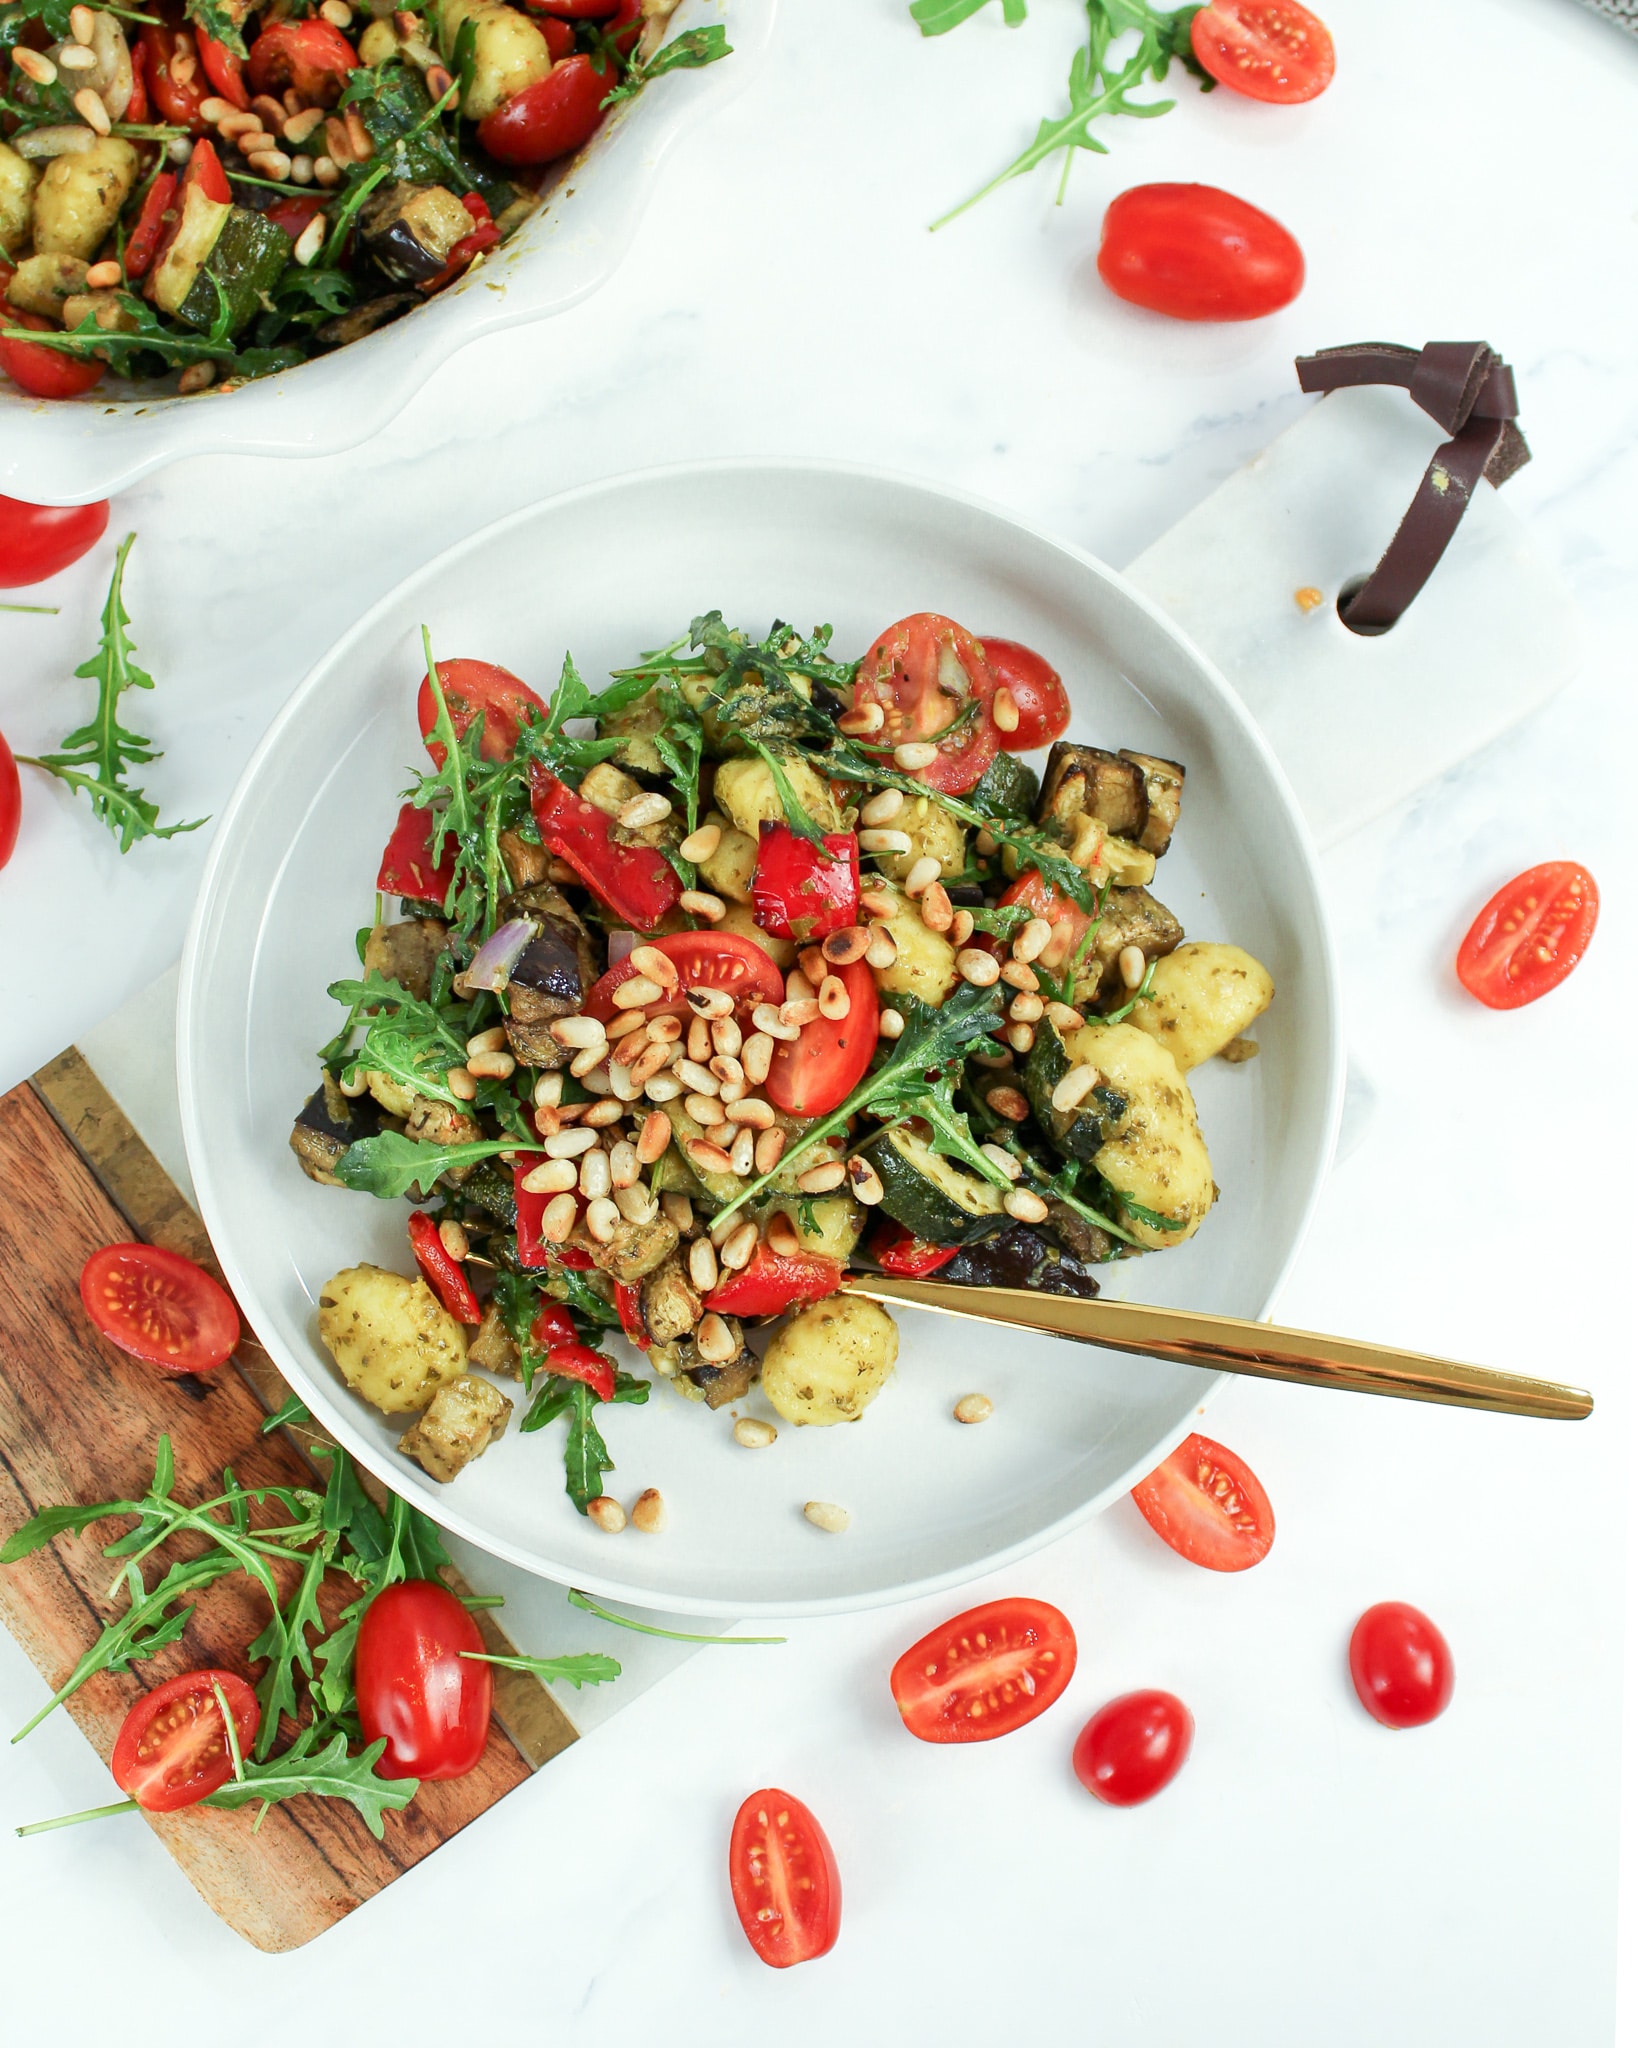 Kalter Gnocchi Salat mit Grillgemüse perfekt zum Grillen | vegan